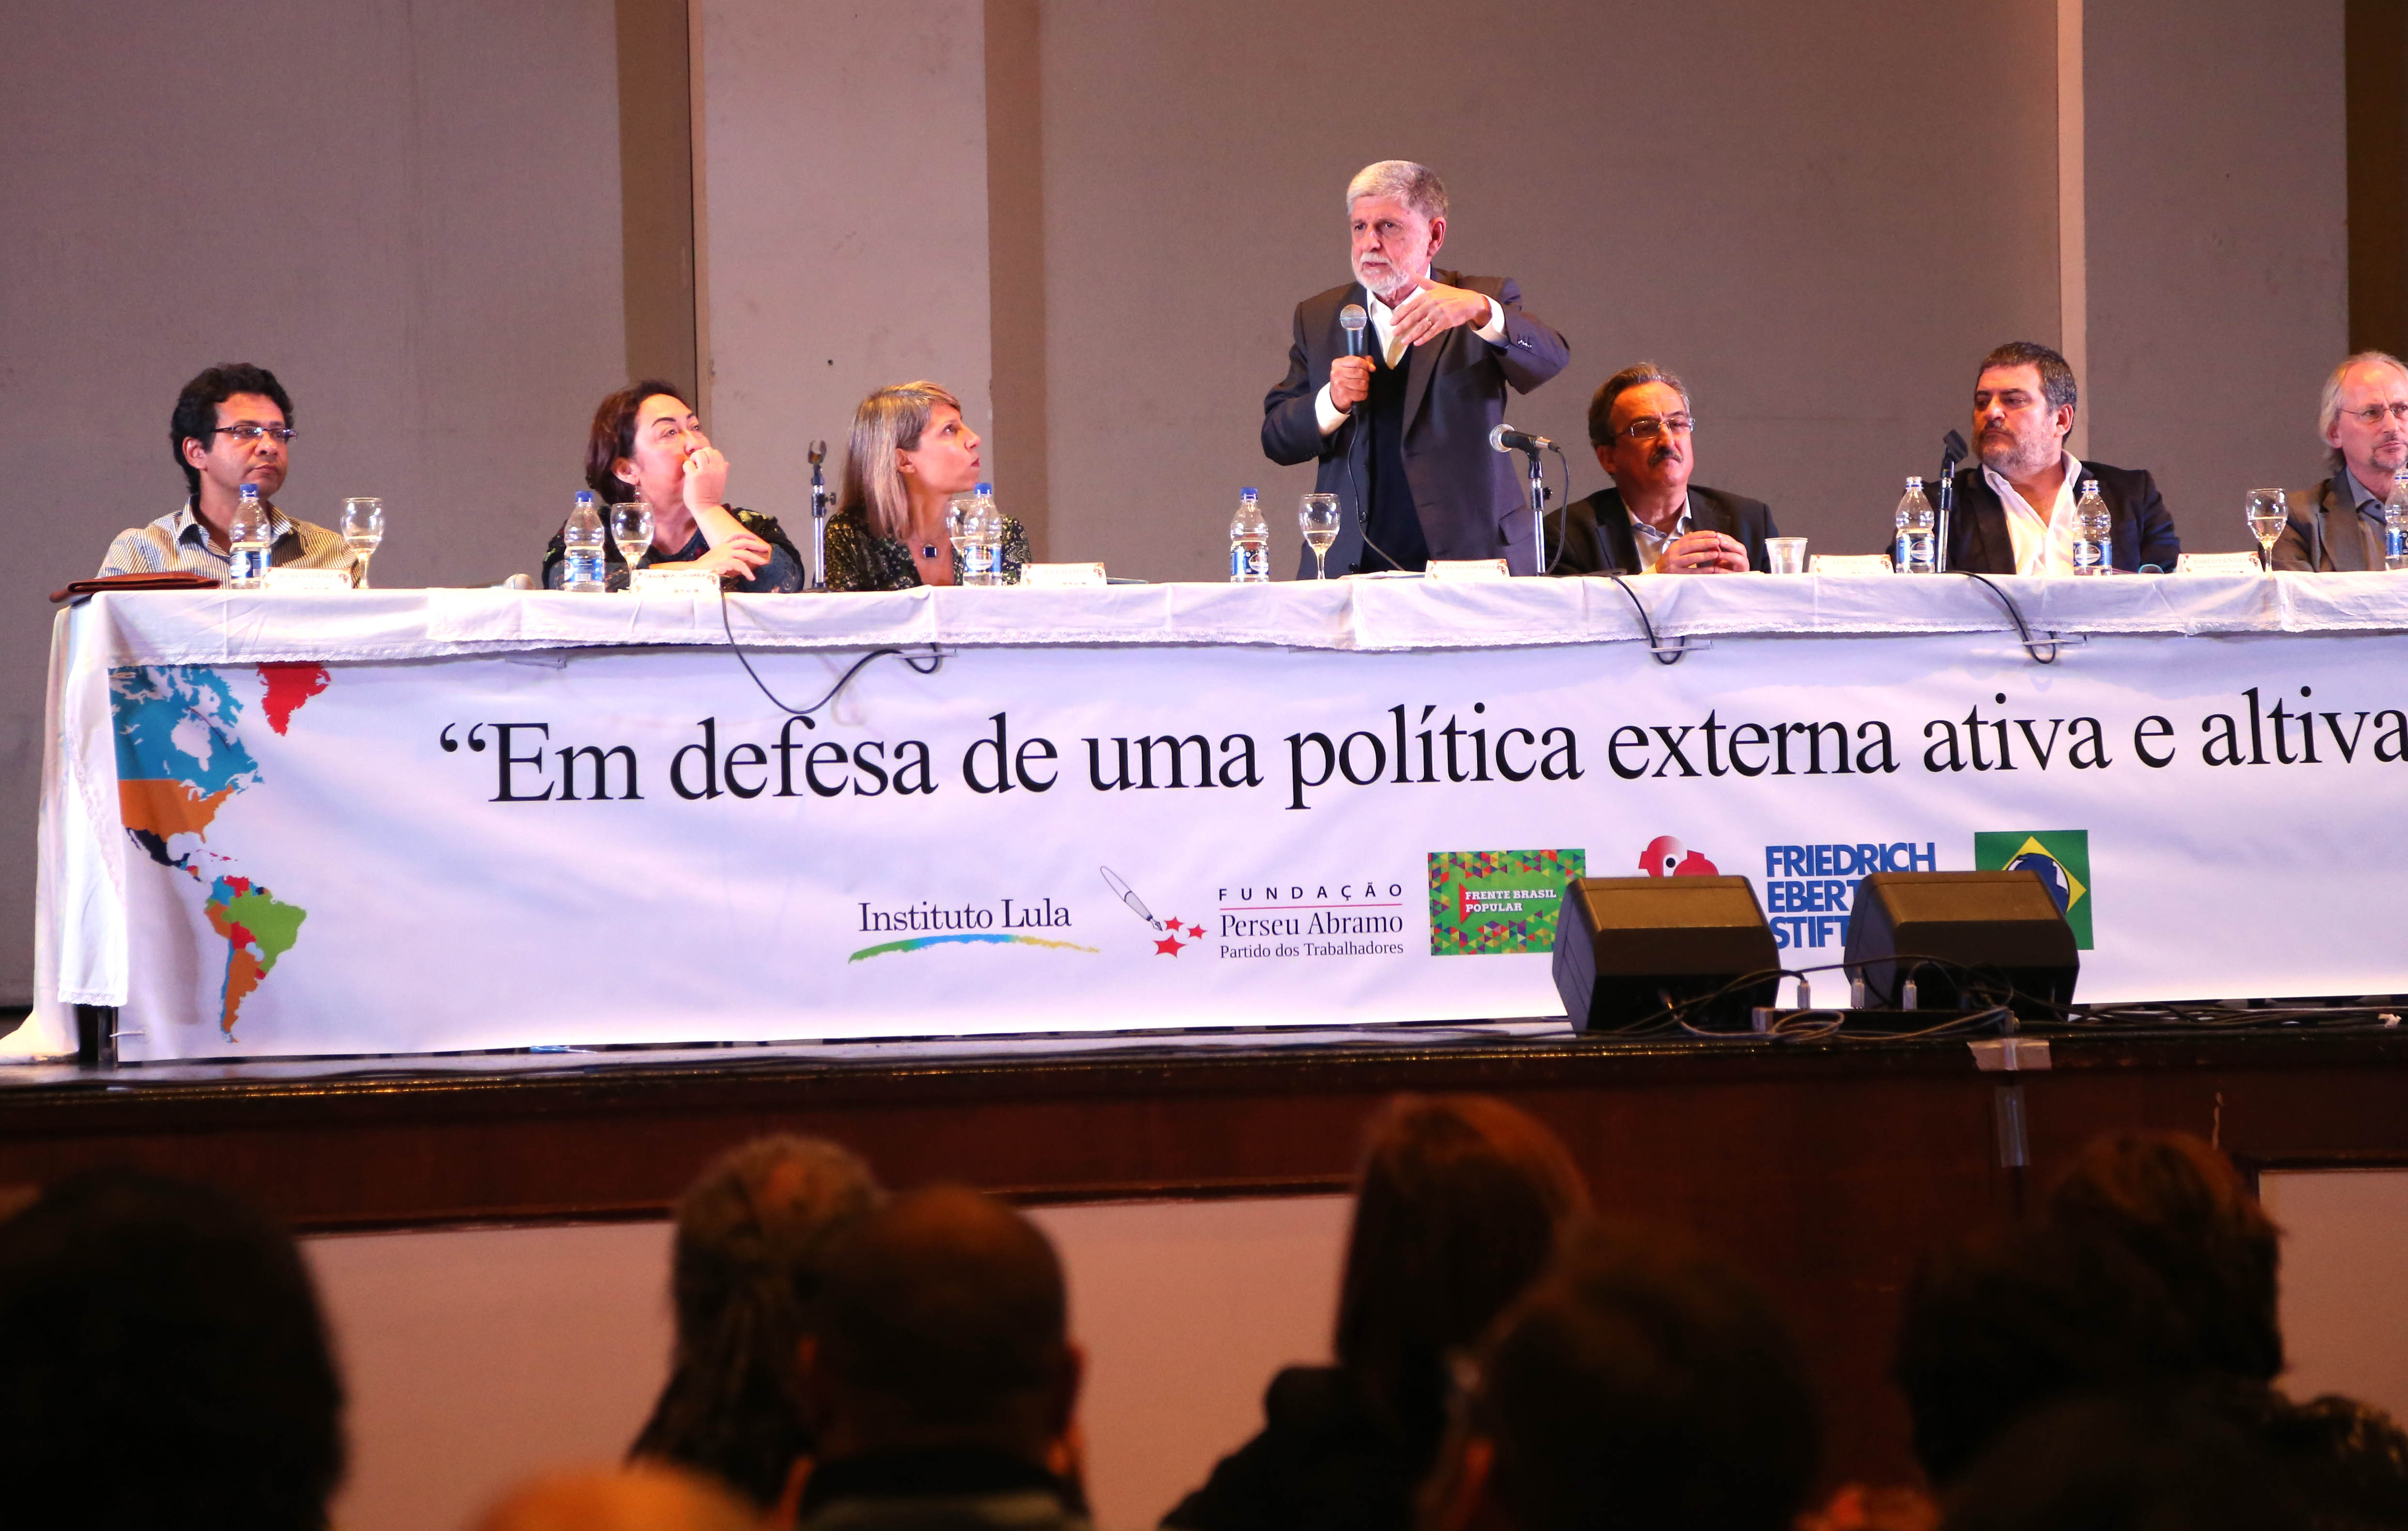 Golpe coloca em risco a política externa brasileira, diz Amorim